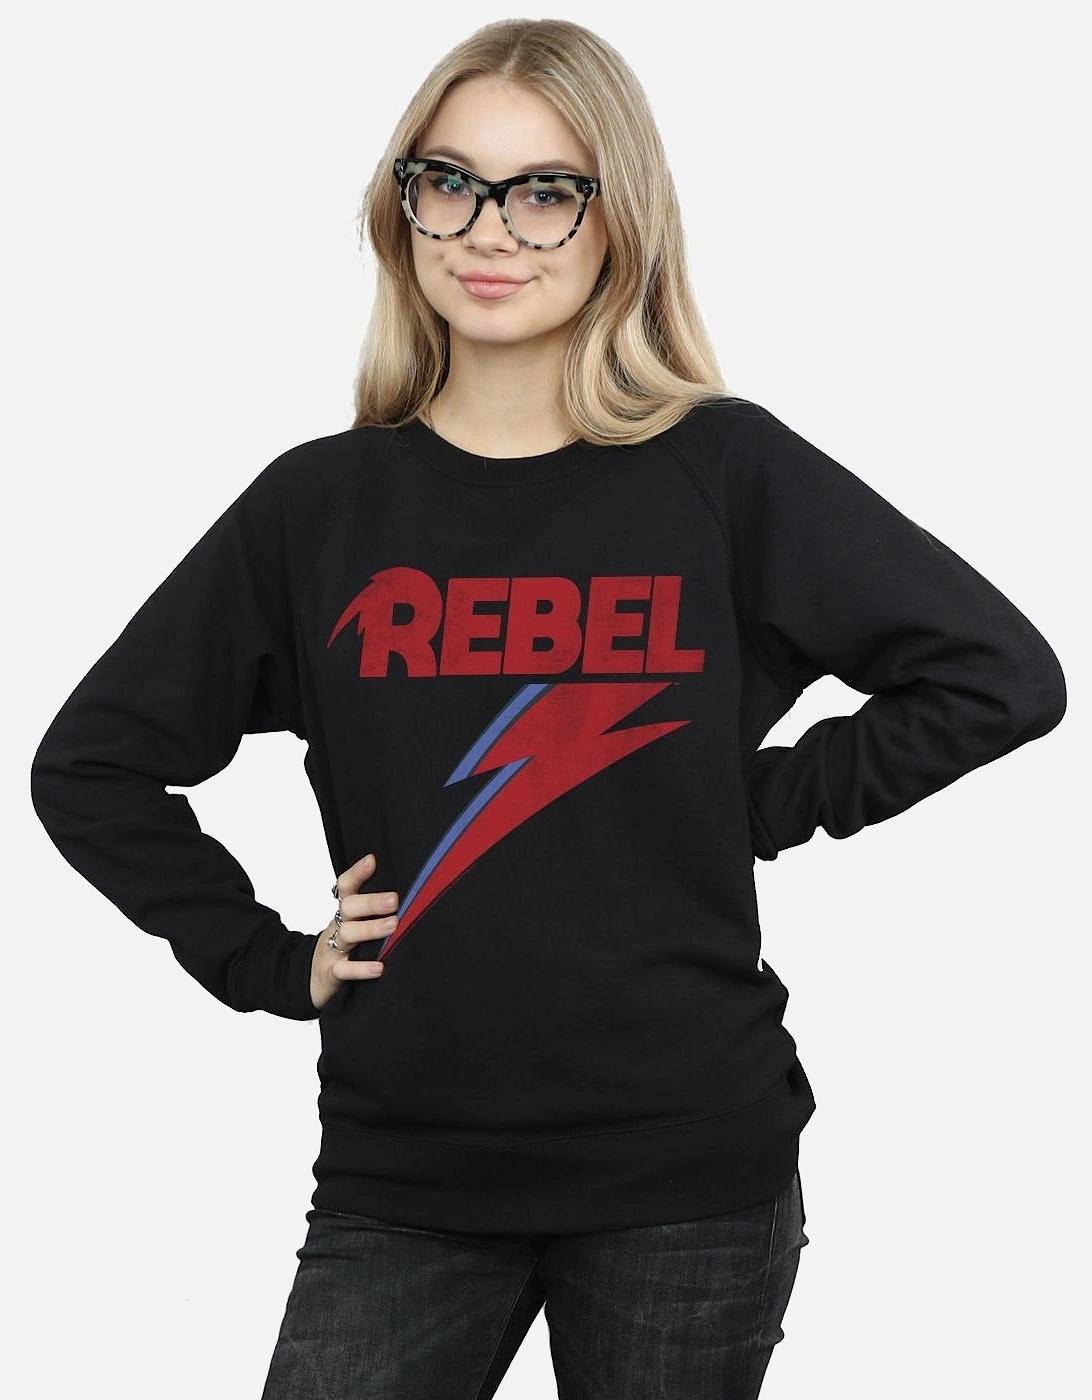 Womens/Ladies Distressed Rebel Sweatshirt